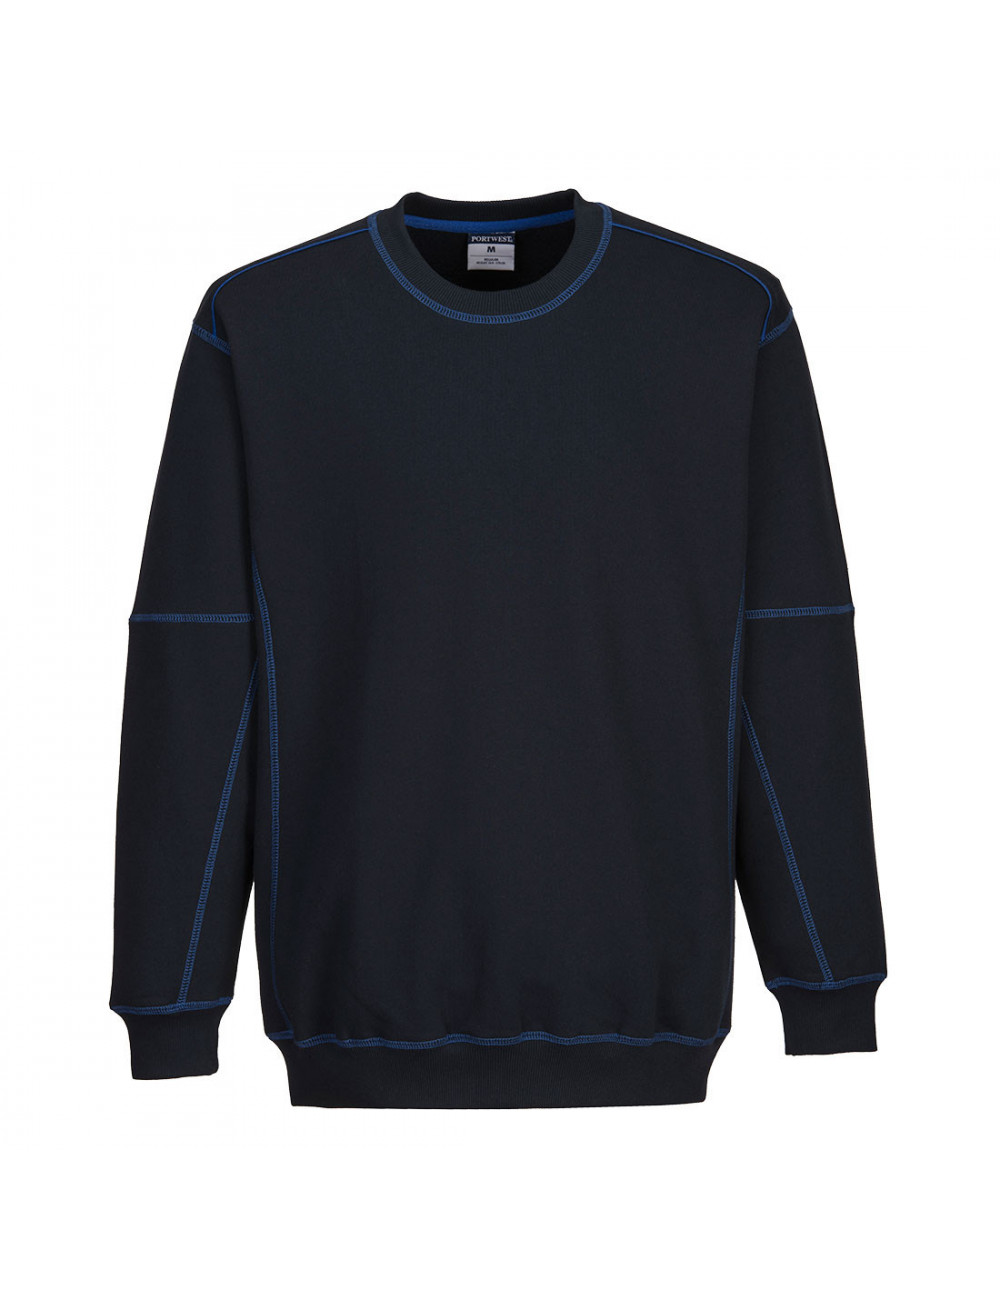 Zweifarbiges Portwest-Sweatshirt in Marineblau/Königsblau